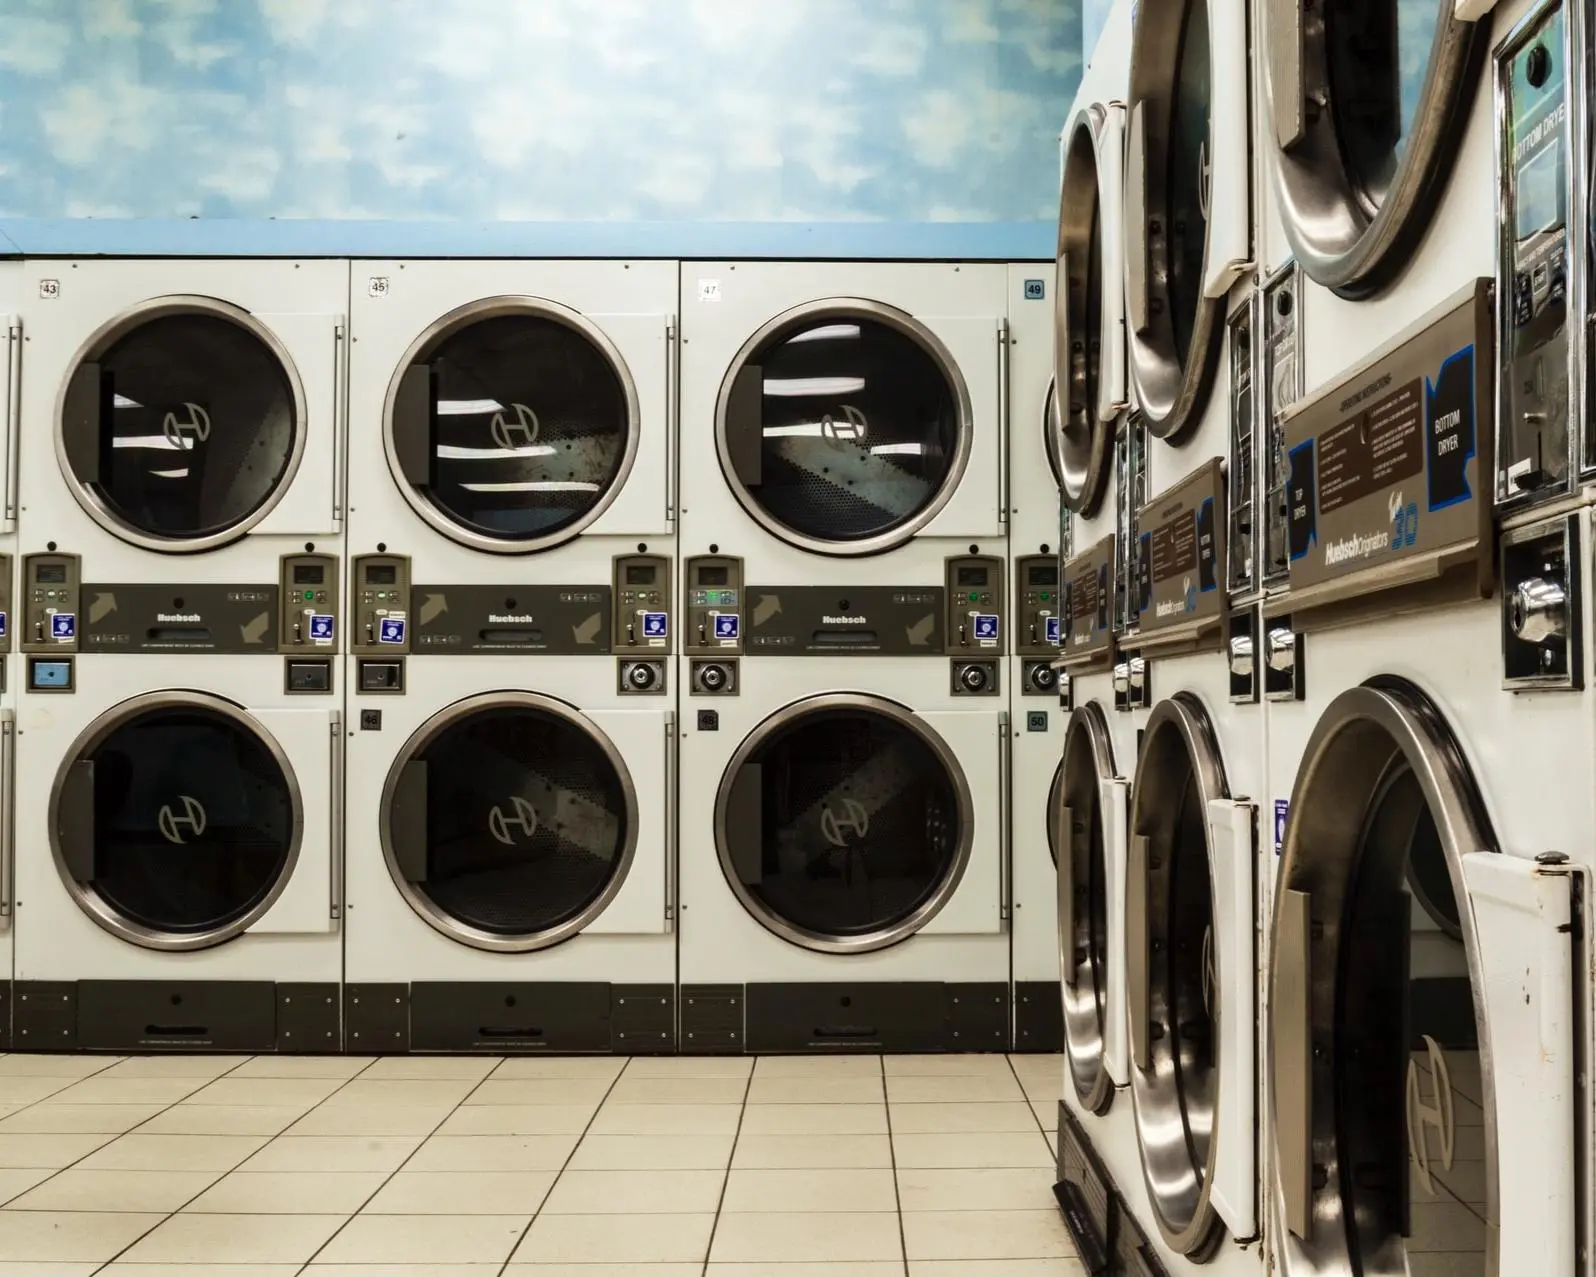 centros de recoleccion de lavadoras barcelona - Cómo deshacerse de una nevera vieja